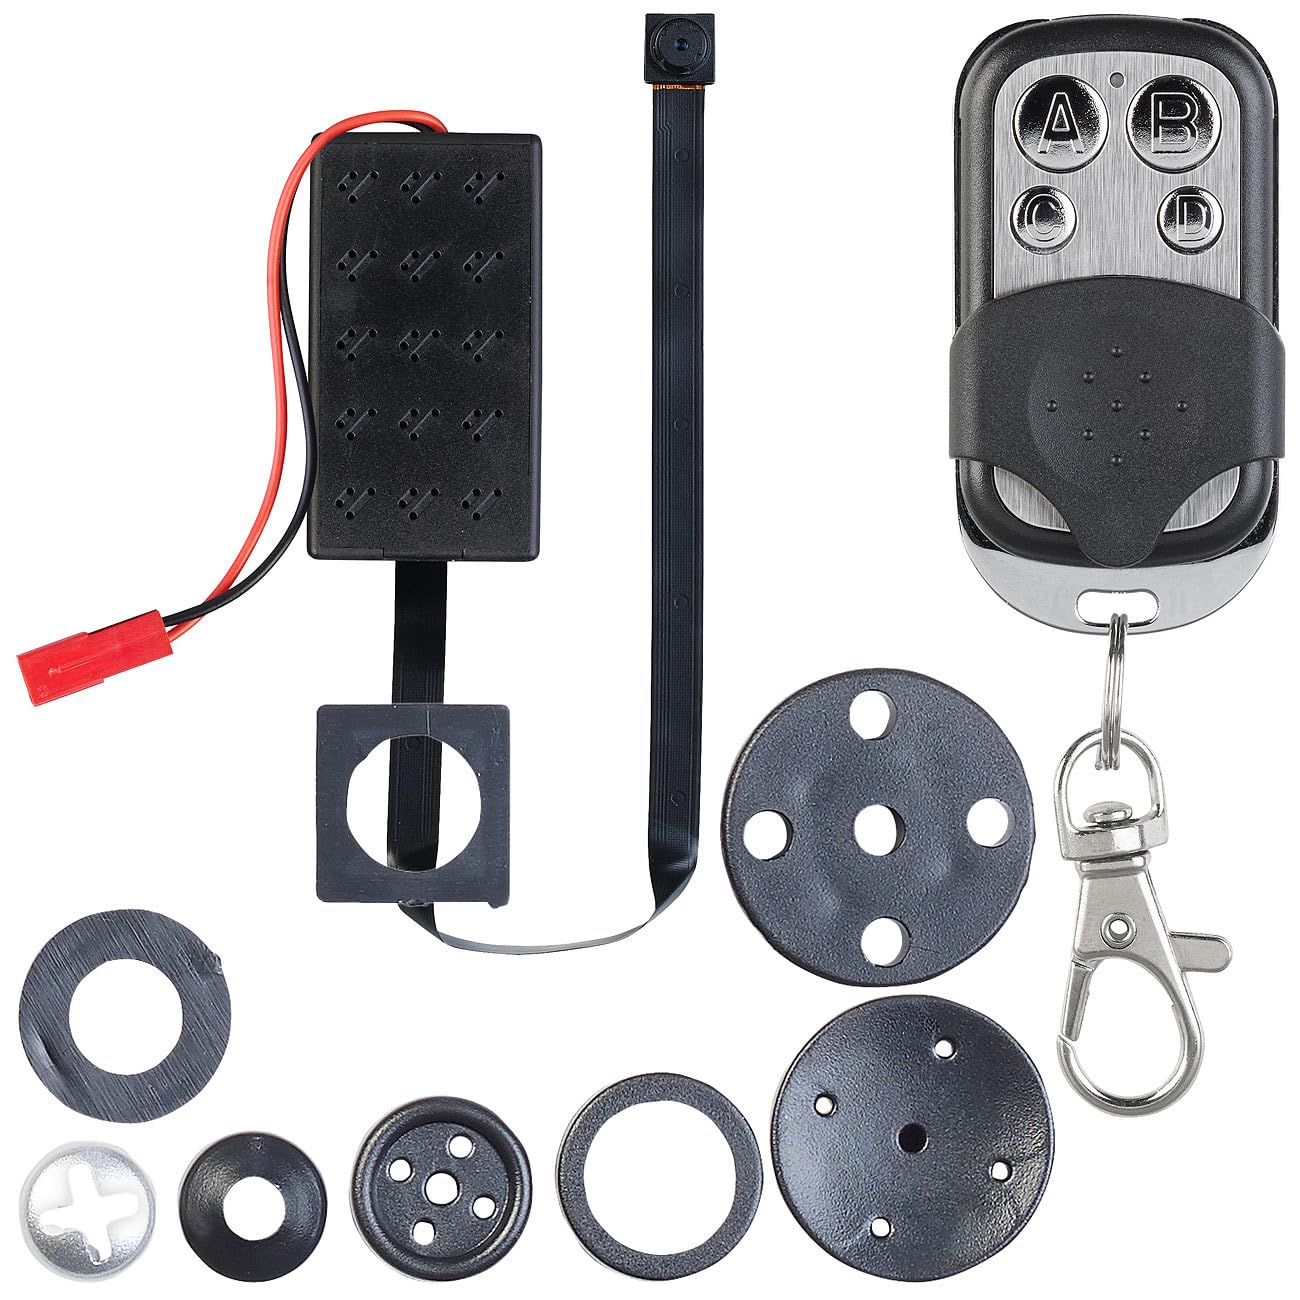 Somikon Knopflochkamera: Mobile HD-Knopf-Sicherheitskamera, Bewegungserkennung & Fernbedienung (Mini Kamera mit Fernbedienung, Micro Camera, Knopfloch)